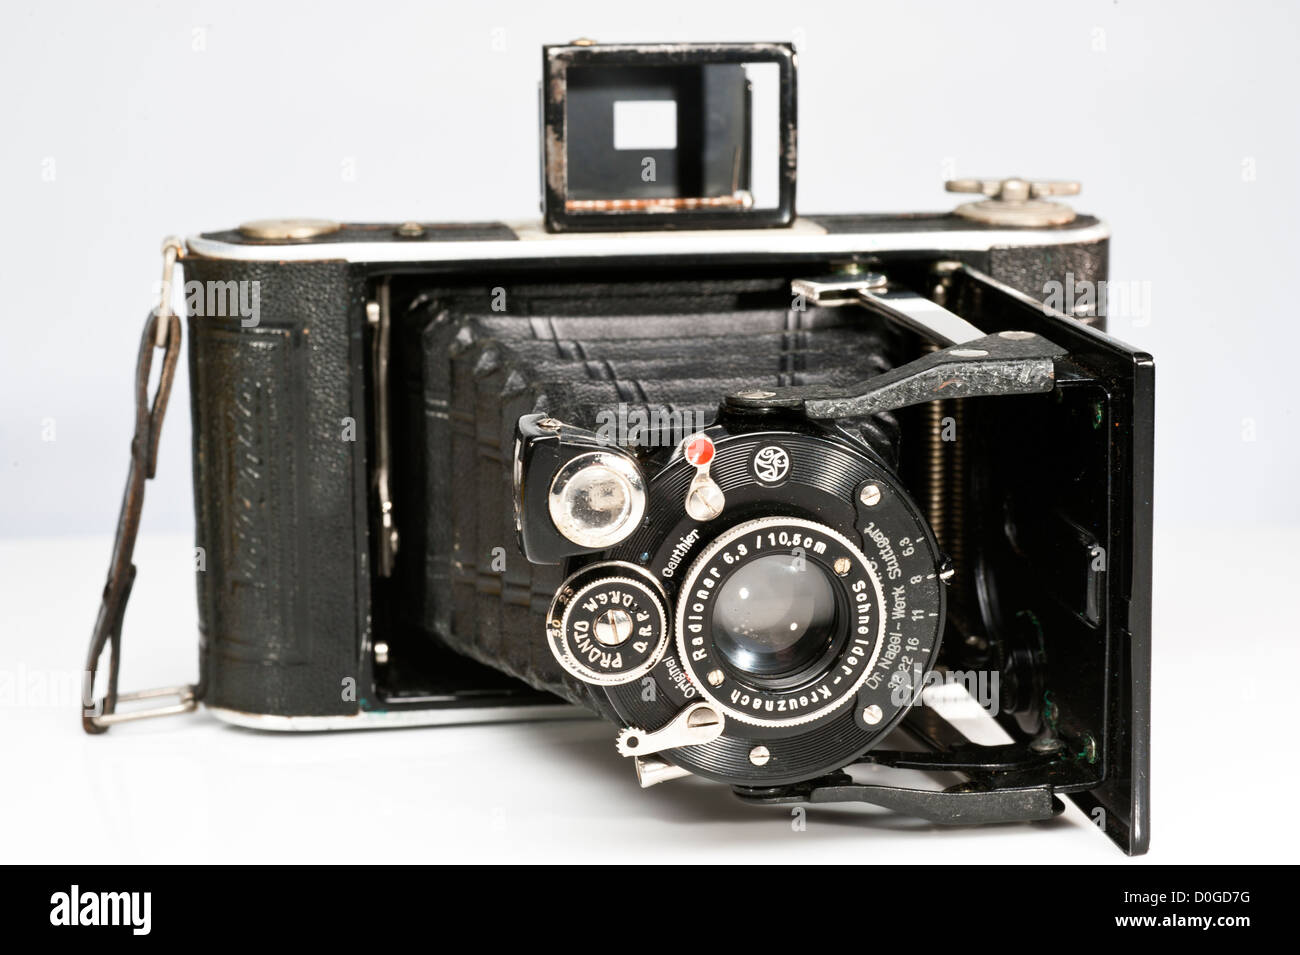 Vintage deutsche Nagel Vollenda 620 6 x 9 Kamera mit einem Objektiv Falten gekennzeichnet Radionar Schnieder - Kreuznach. Eine seltene und Sammlerstück. Stockfoto